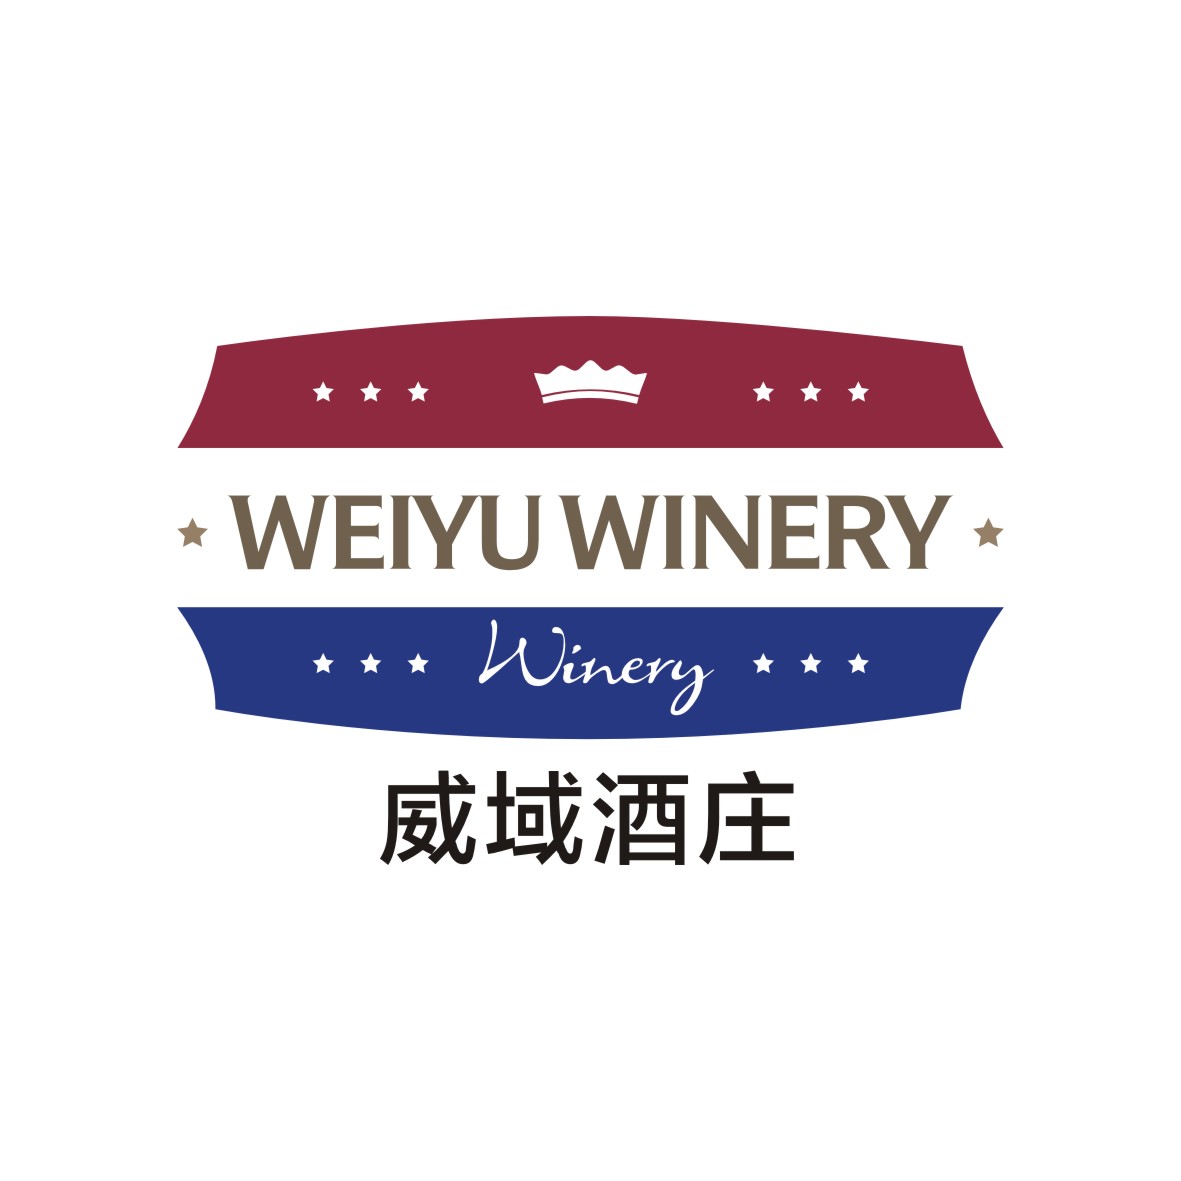 广州知麦网络科技有限公司商标威域酒庄 WEIYU WINERY WINERY（33类）商标转让流程及费用